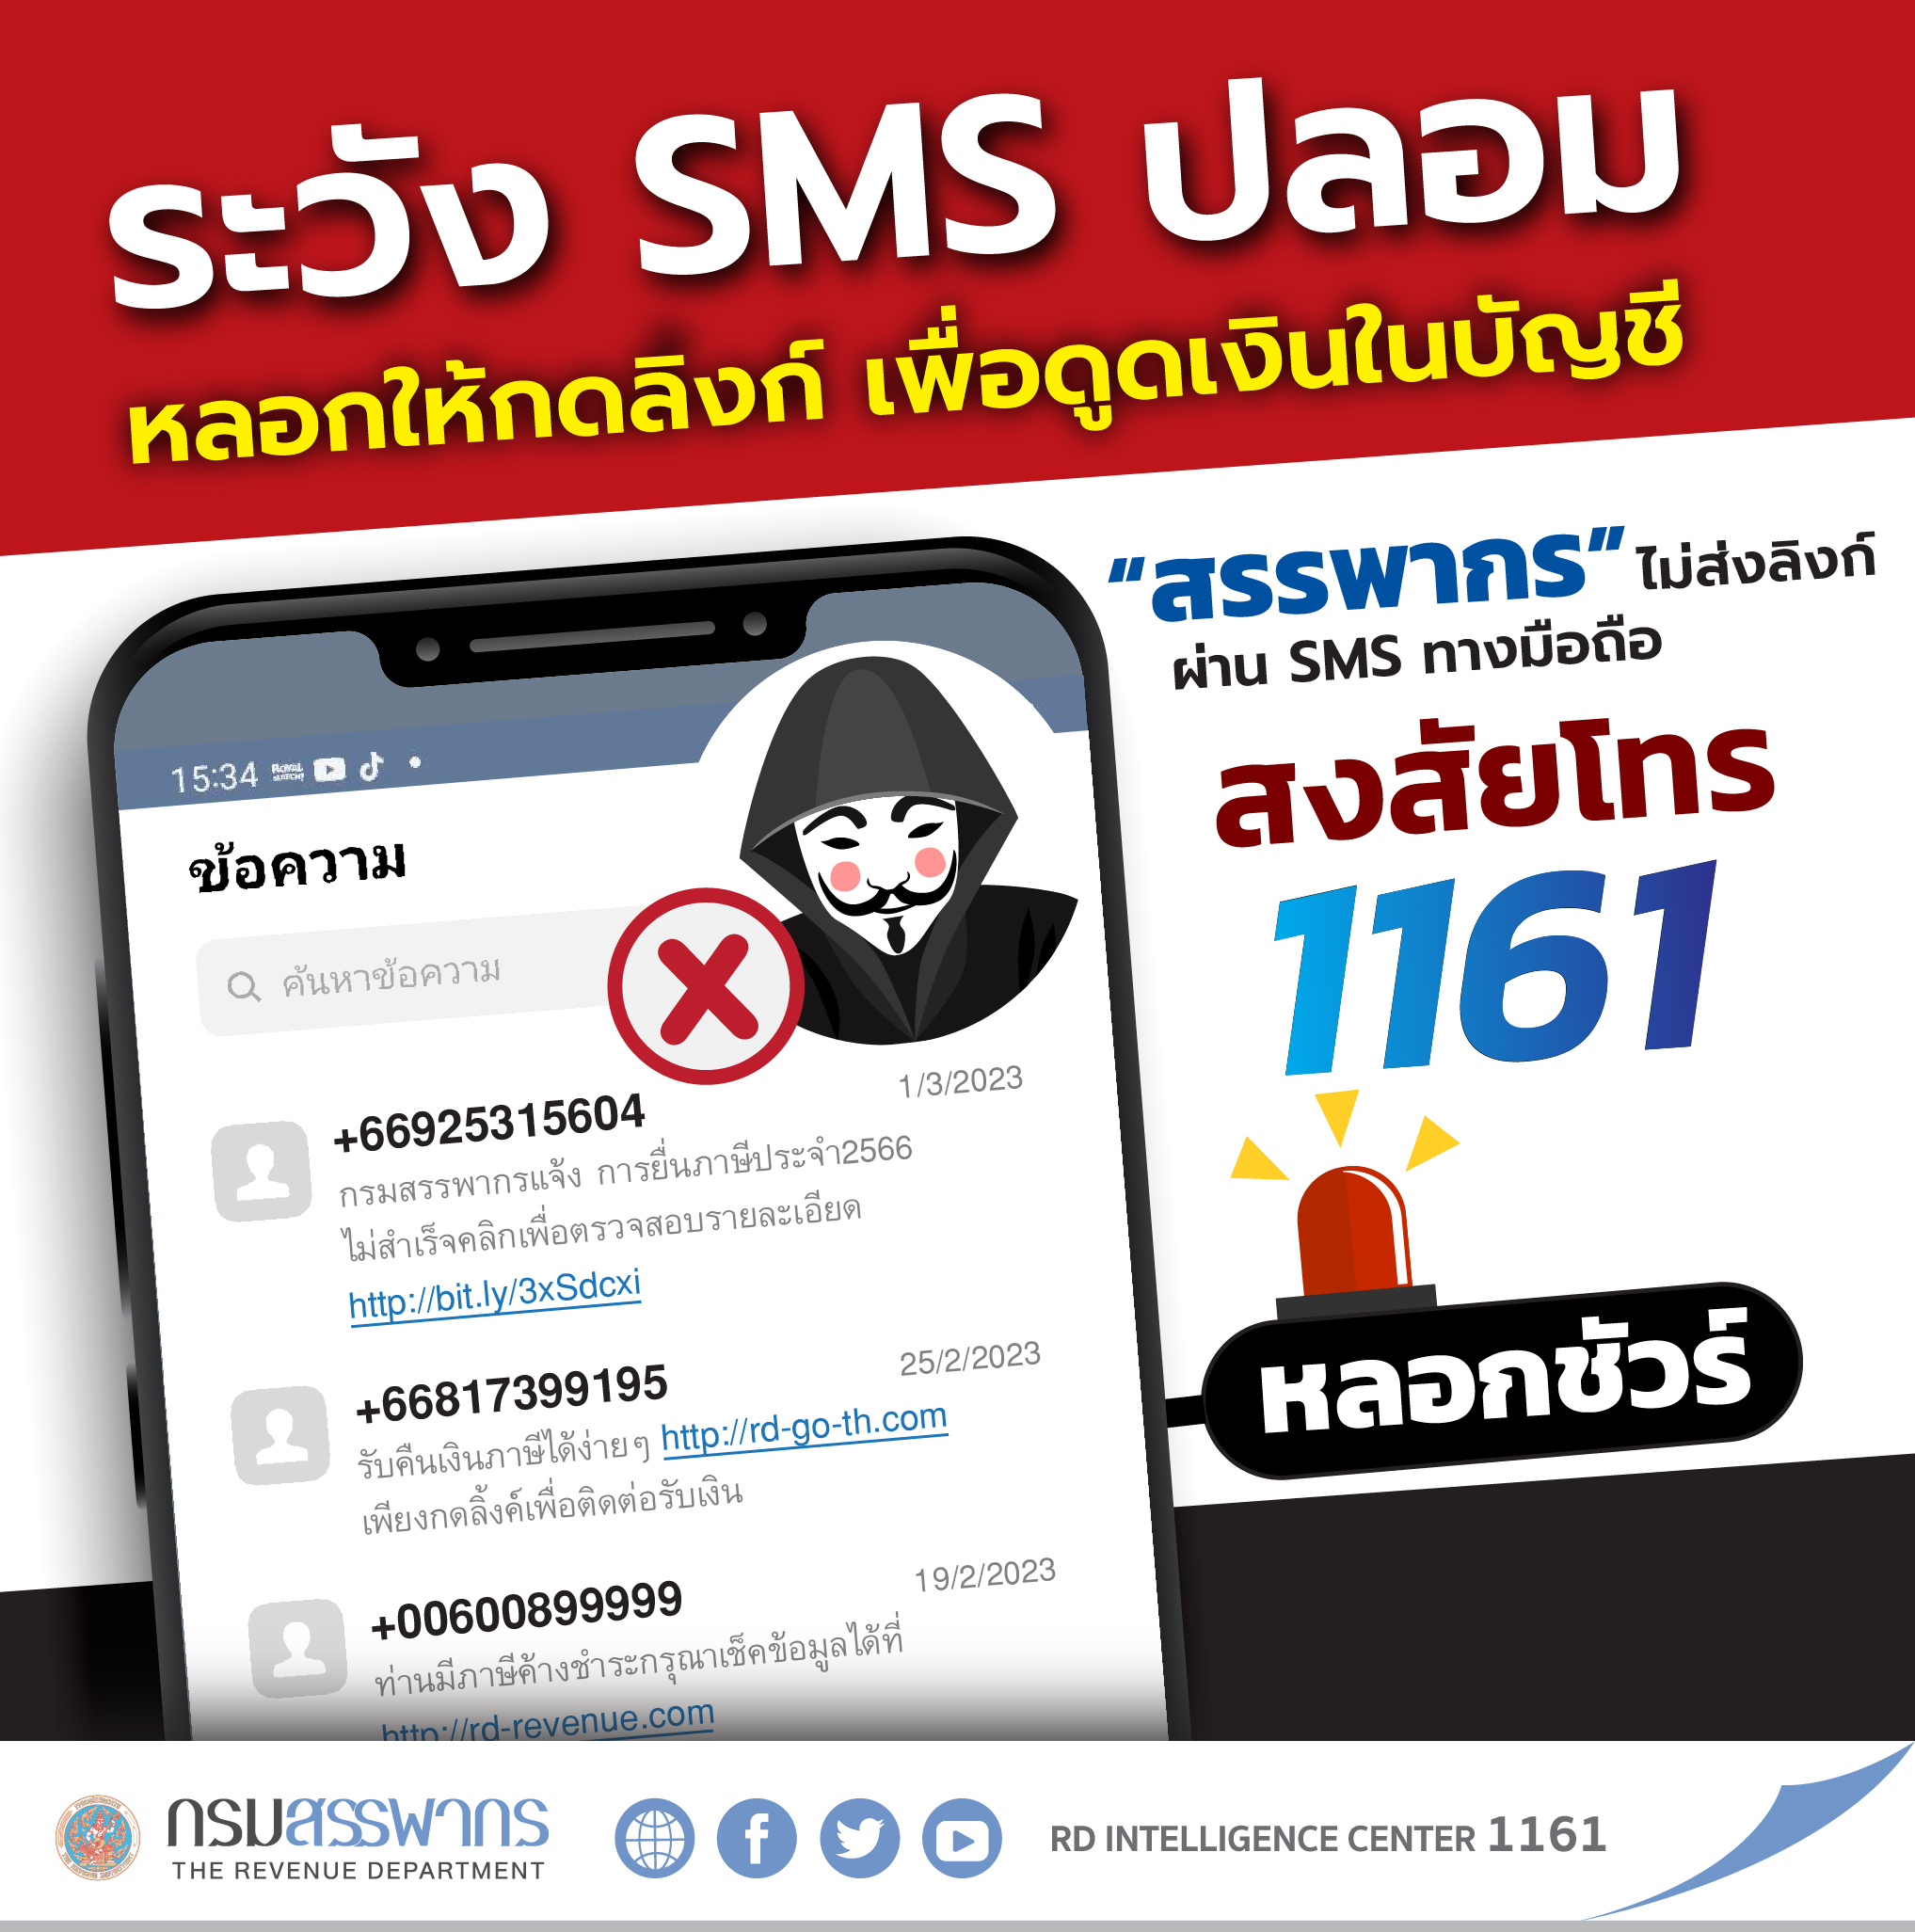 ระวัง sms ปลอม‼️ กรมสรรพากรไม่ส่งลิงก์ผ่าน sms ทางมือถือ